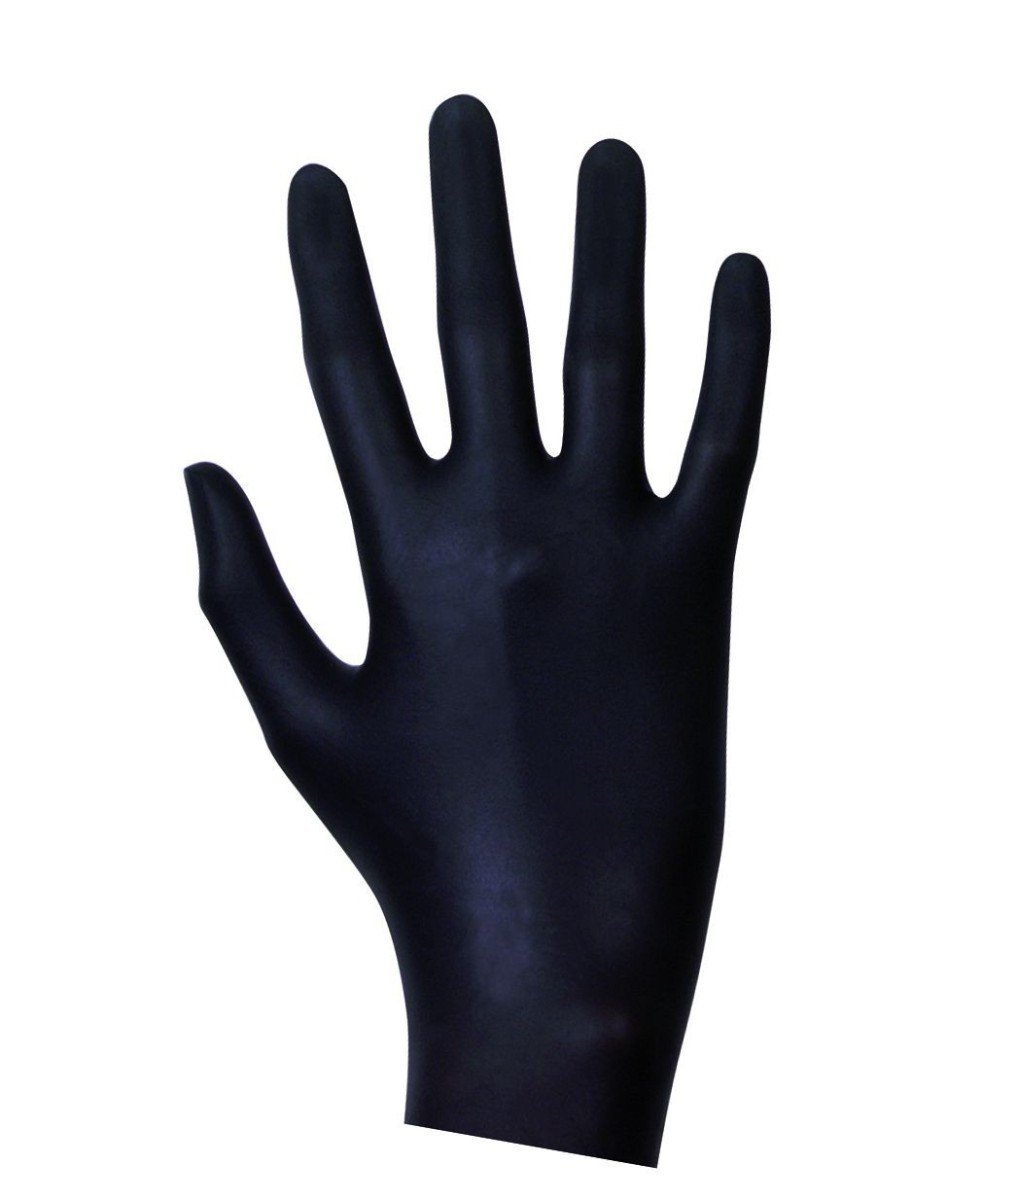 Latex Examination Gloves Black 20 pcs